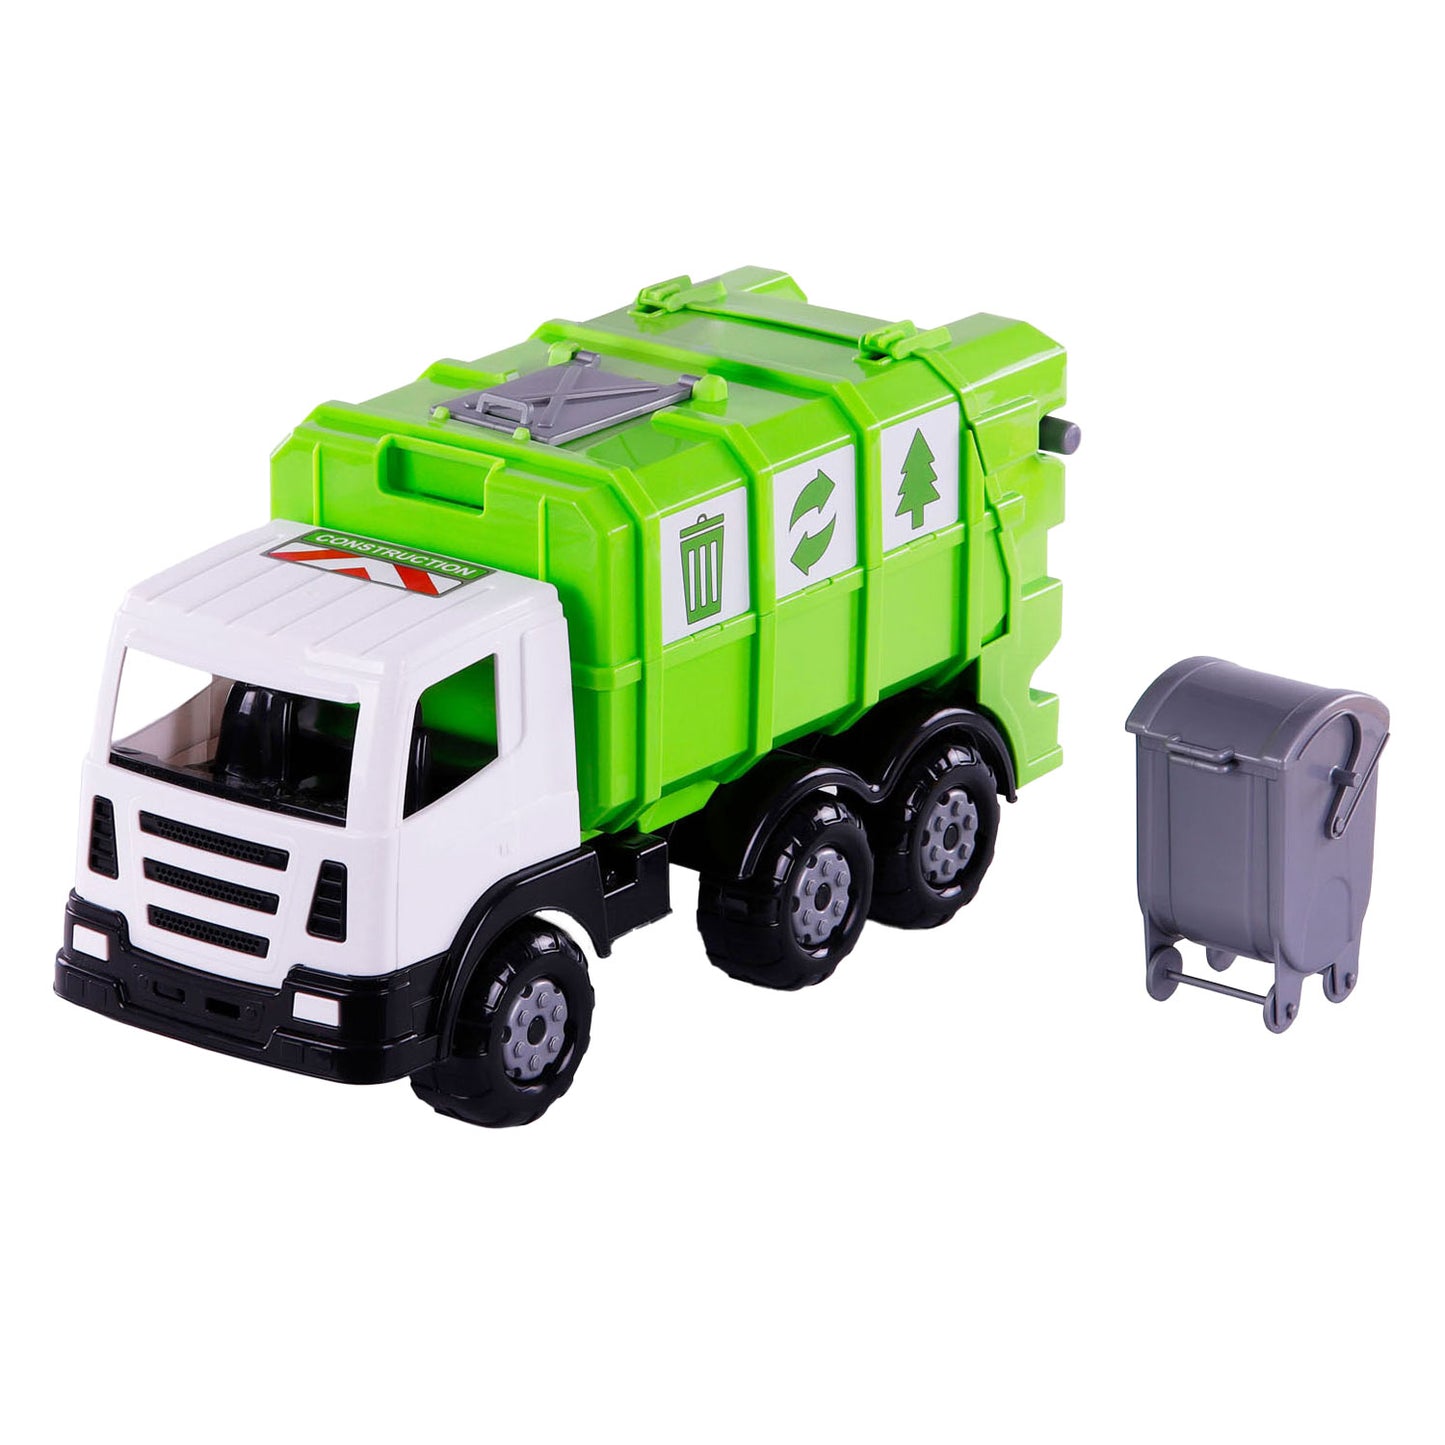 Cavallino Toys Cavallino XL Cambán de basura Verde, 42 cm